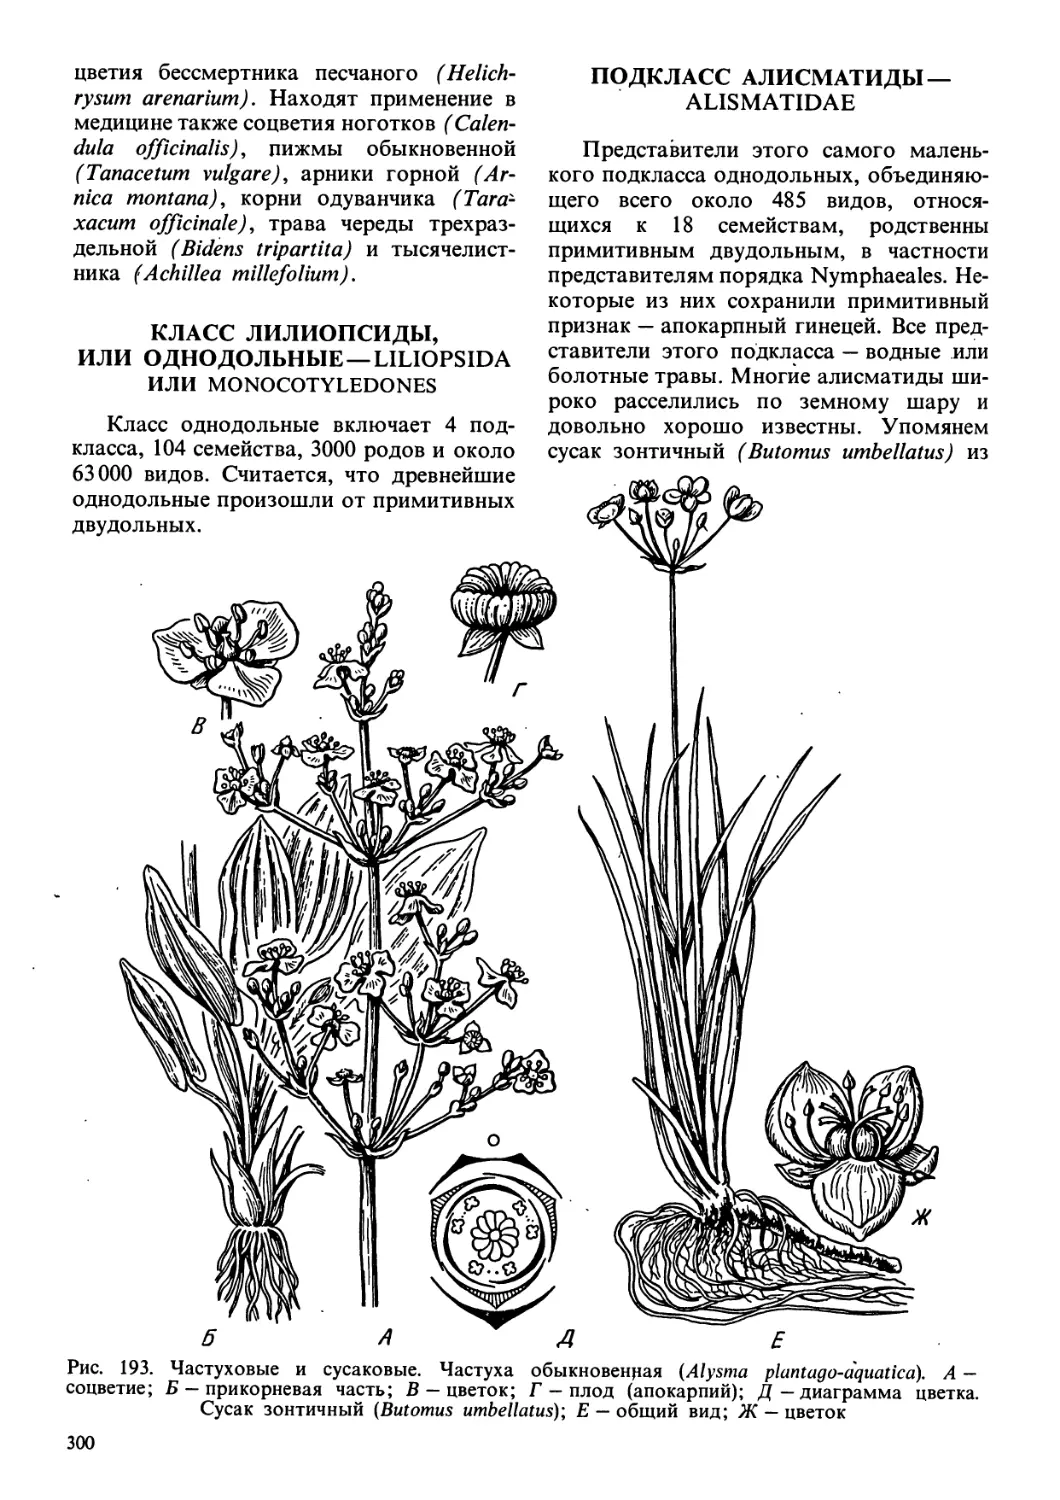 Класс лилиопсиды, или однодольные - Liliopsida, или Monocotyledones
Подкласс алисматиды - Alismatidae